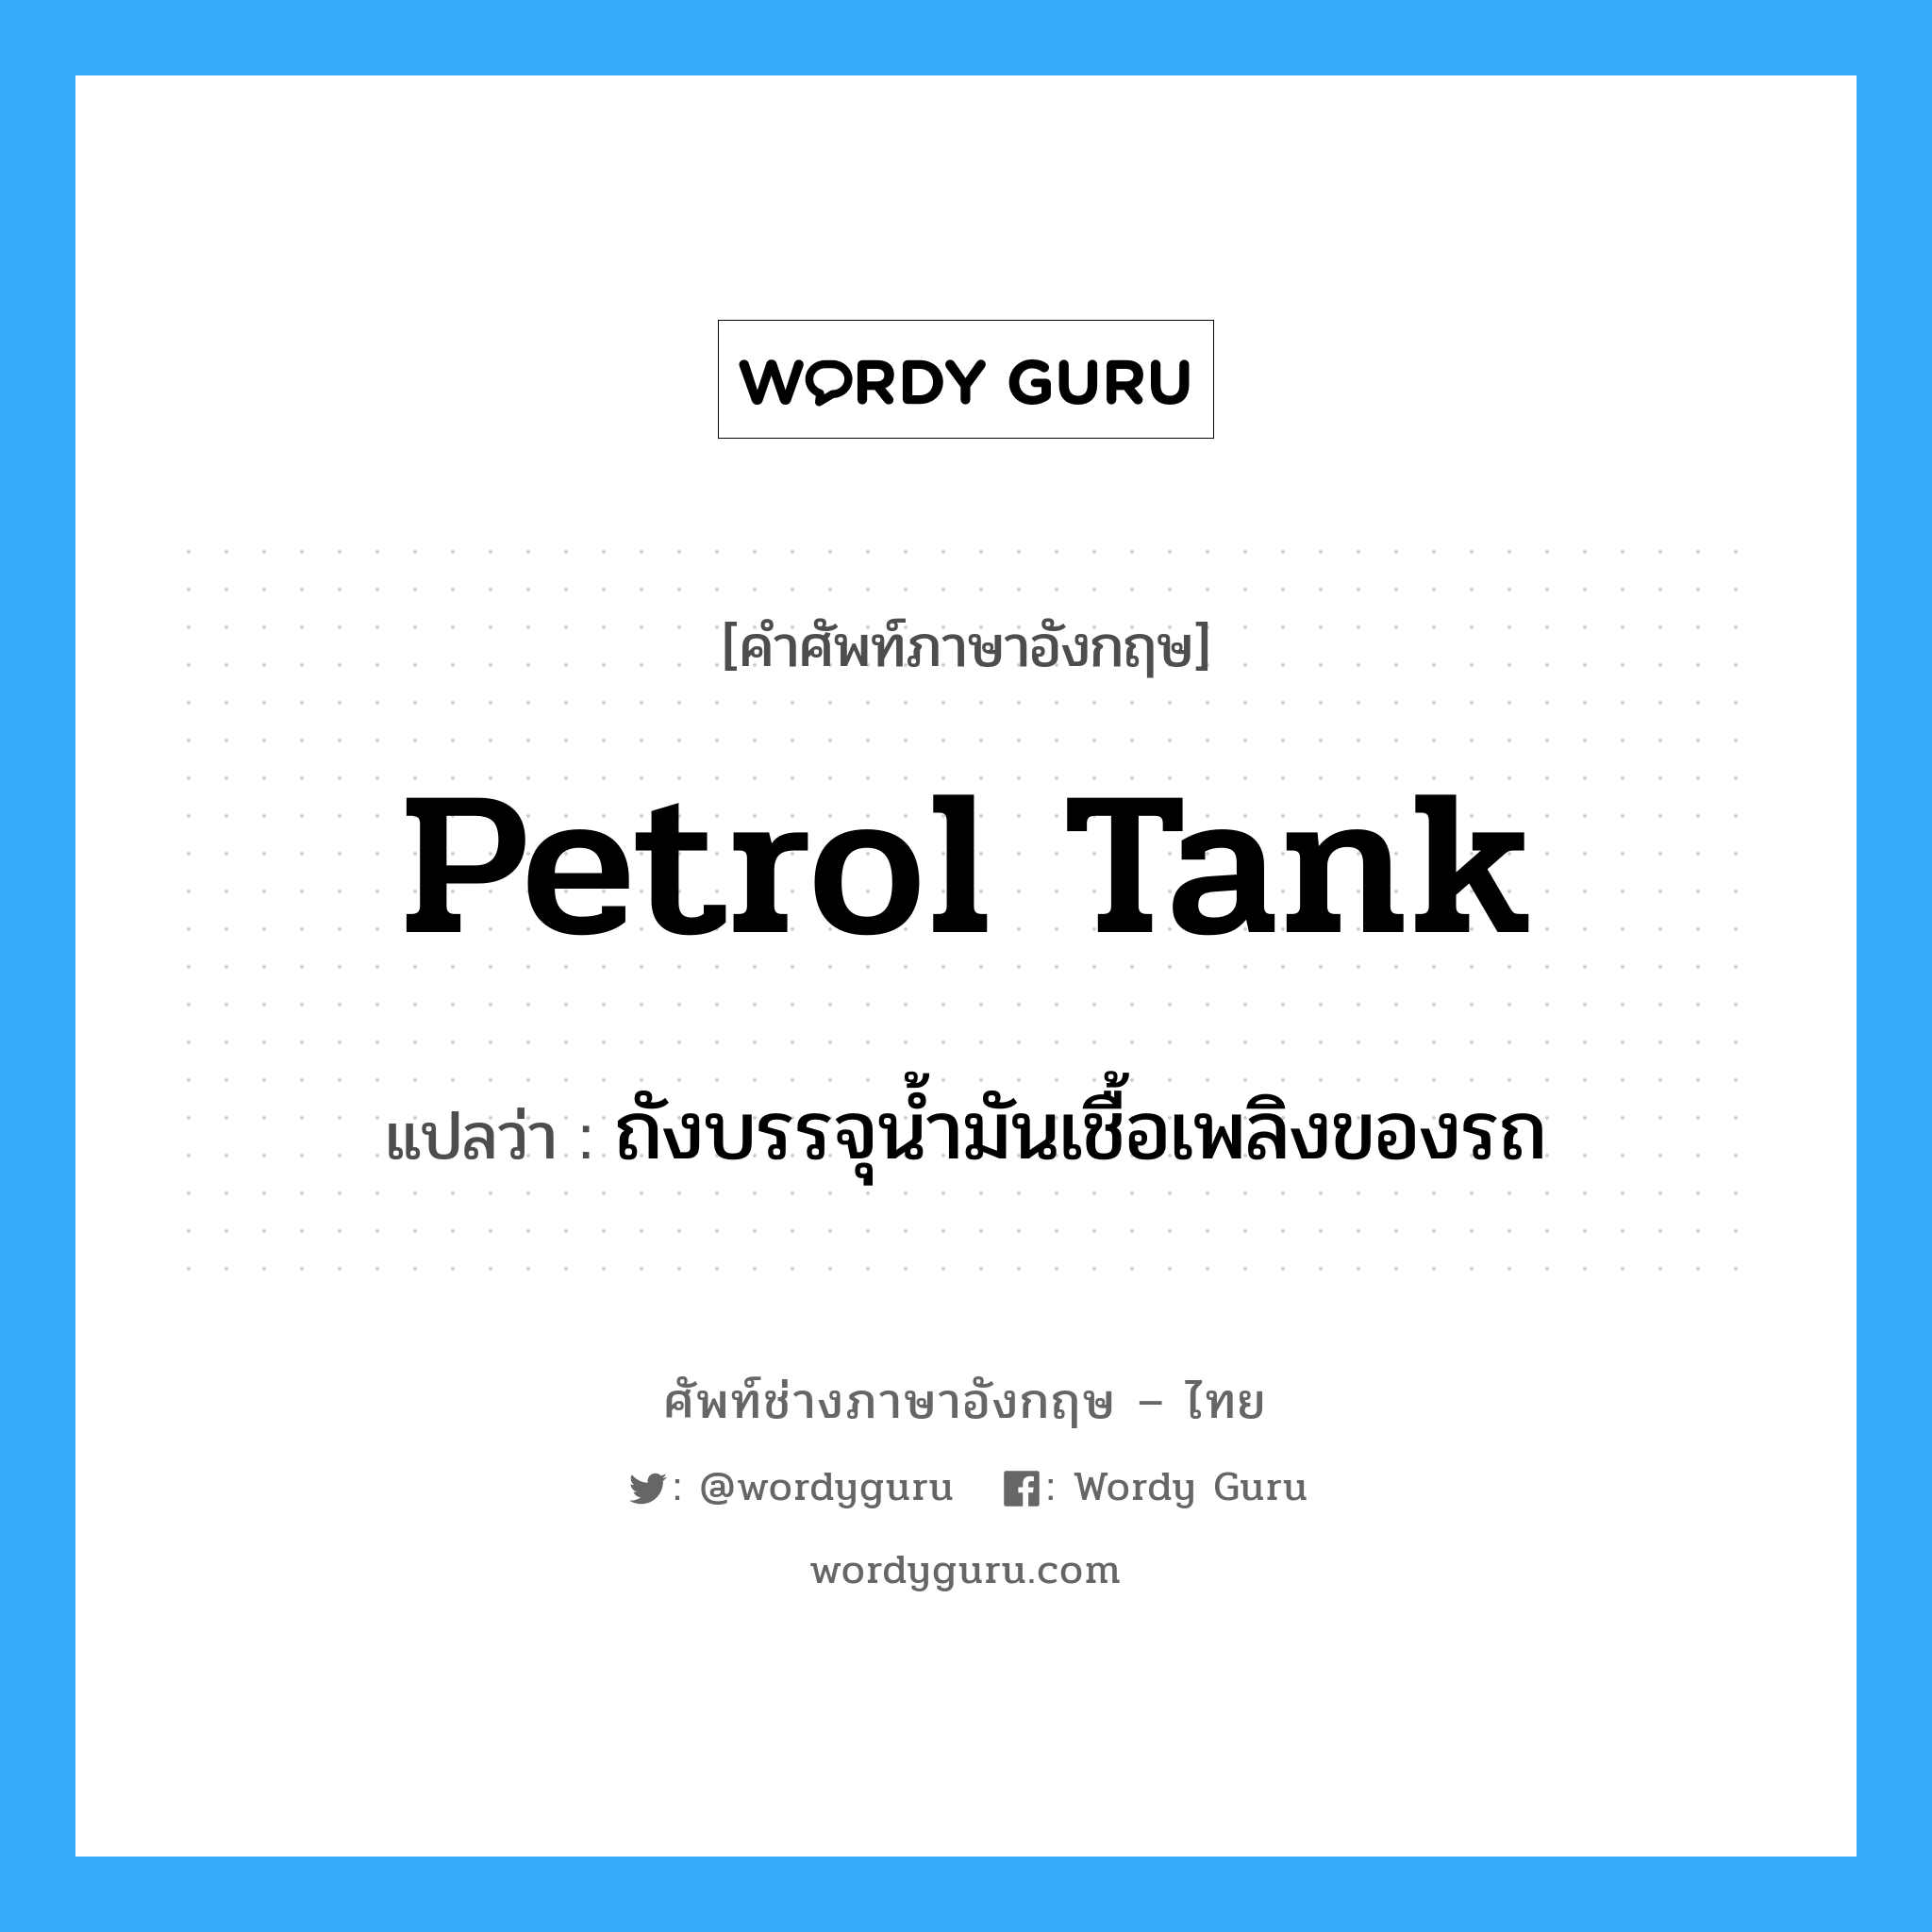 petrol tank แปลว่า?, คำศัพท์ช่างภาษาอังกฤษ - ไทย petrol tank คำศัพท์ภาษาอังกฤษ petrol tank แปลว่า ถังบรรจุน้ำมันเชื้อเพลิงของรถ